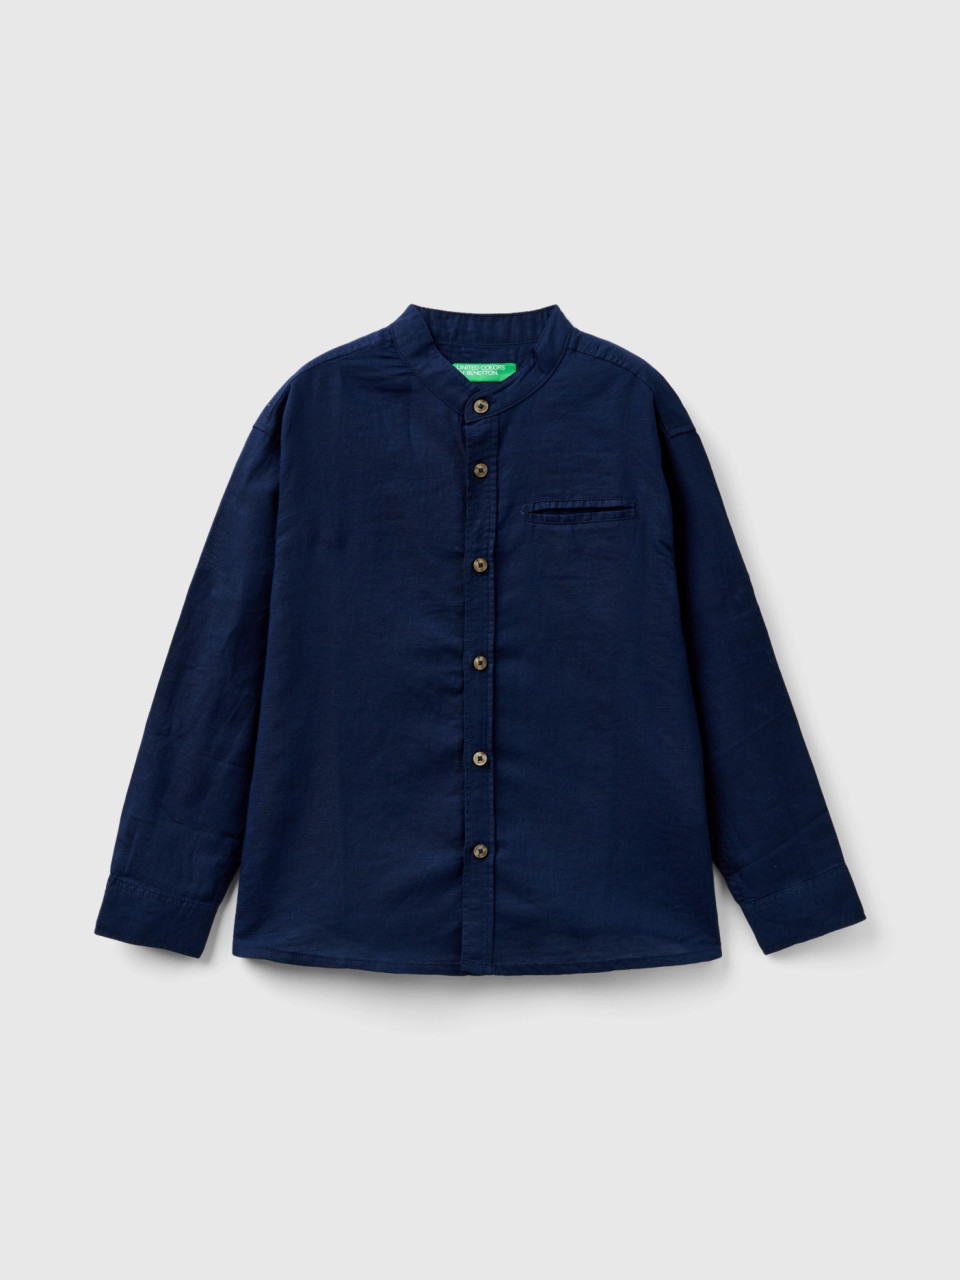 Benetton, Camisa De Lino Mixto Con Cuello Mao, Azul Oscuro, Niños